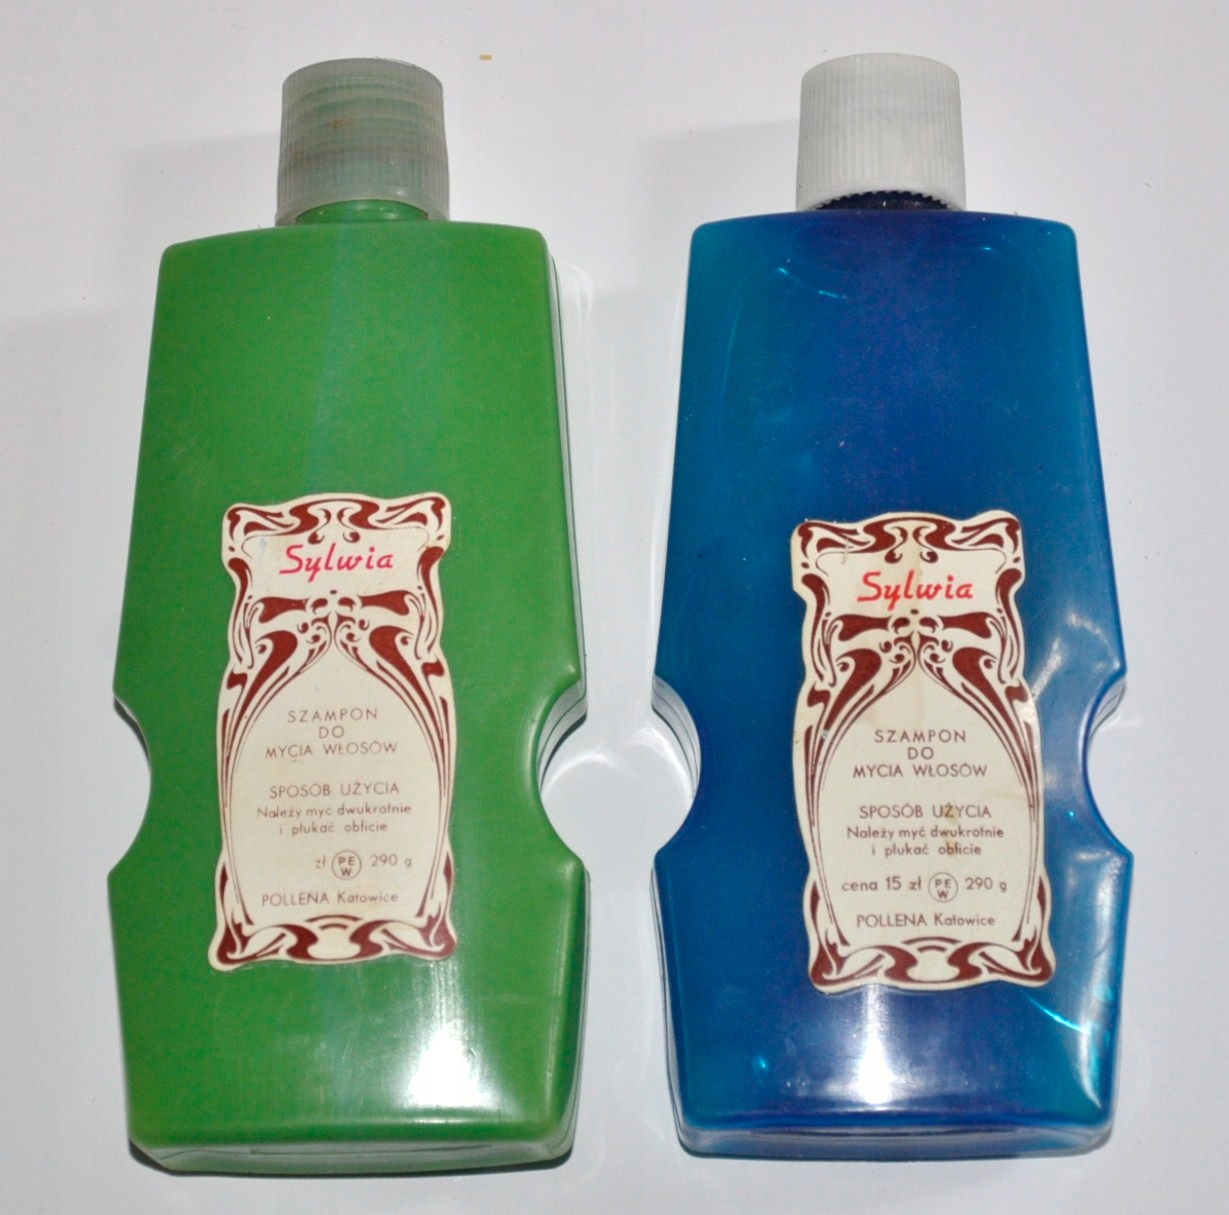 szampon w latach 70-80 tych